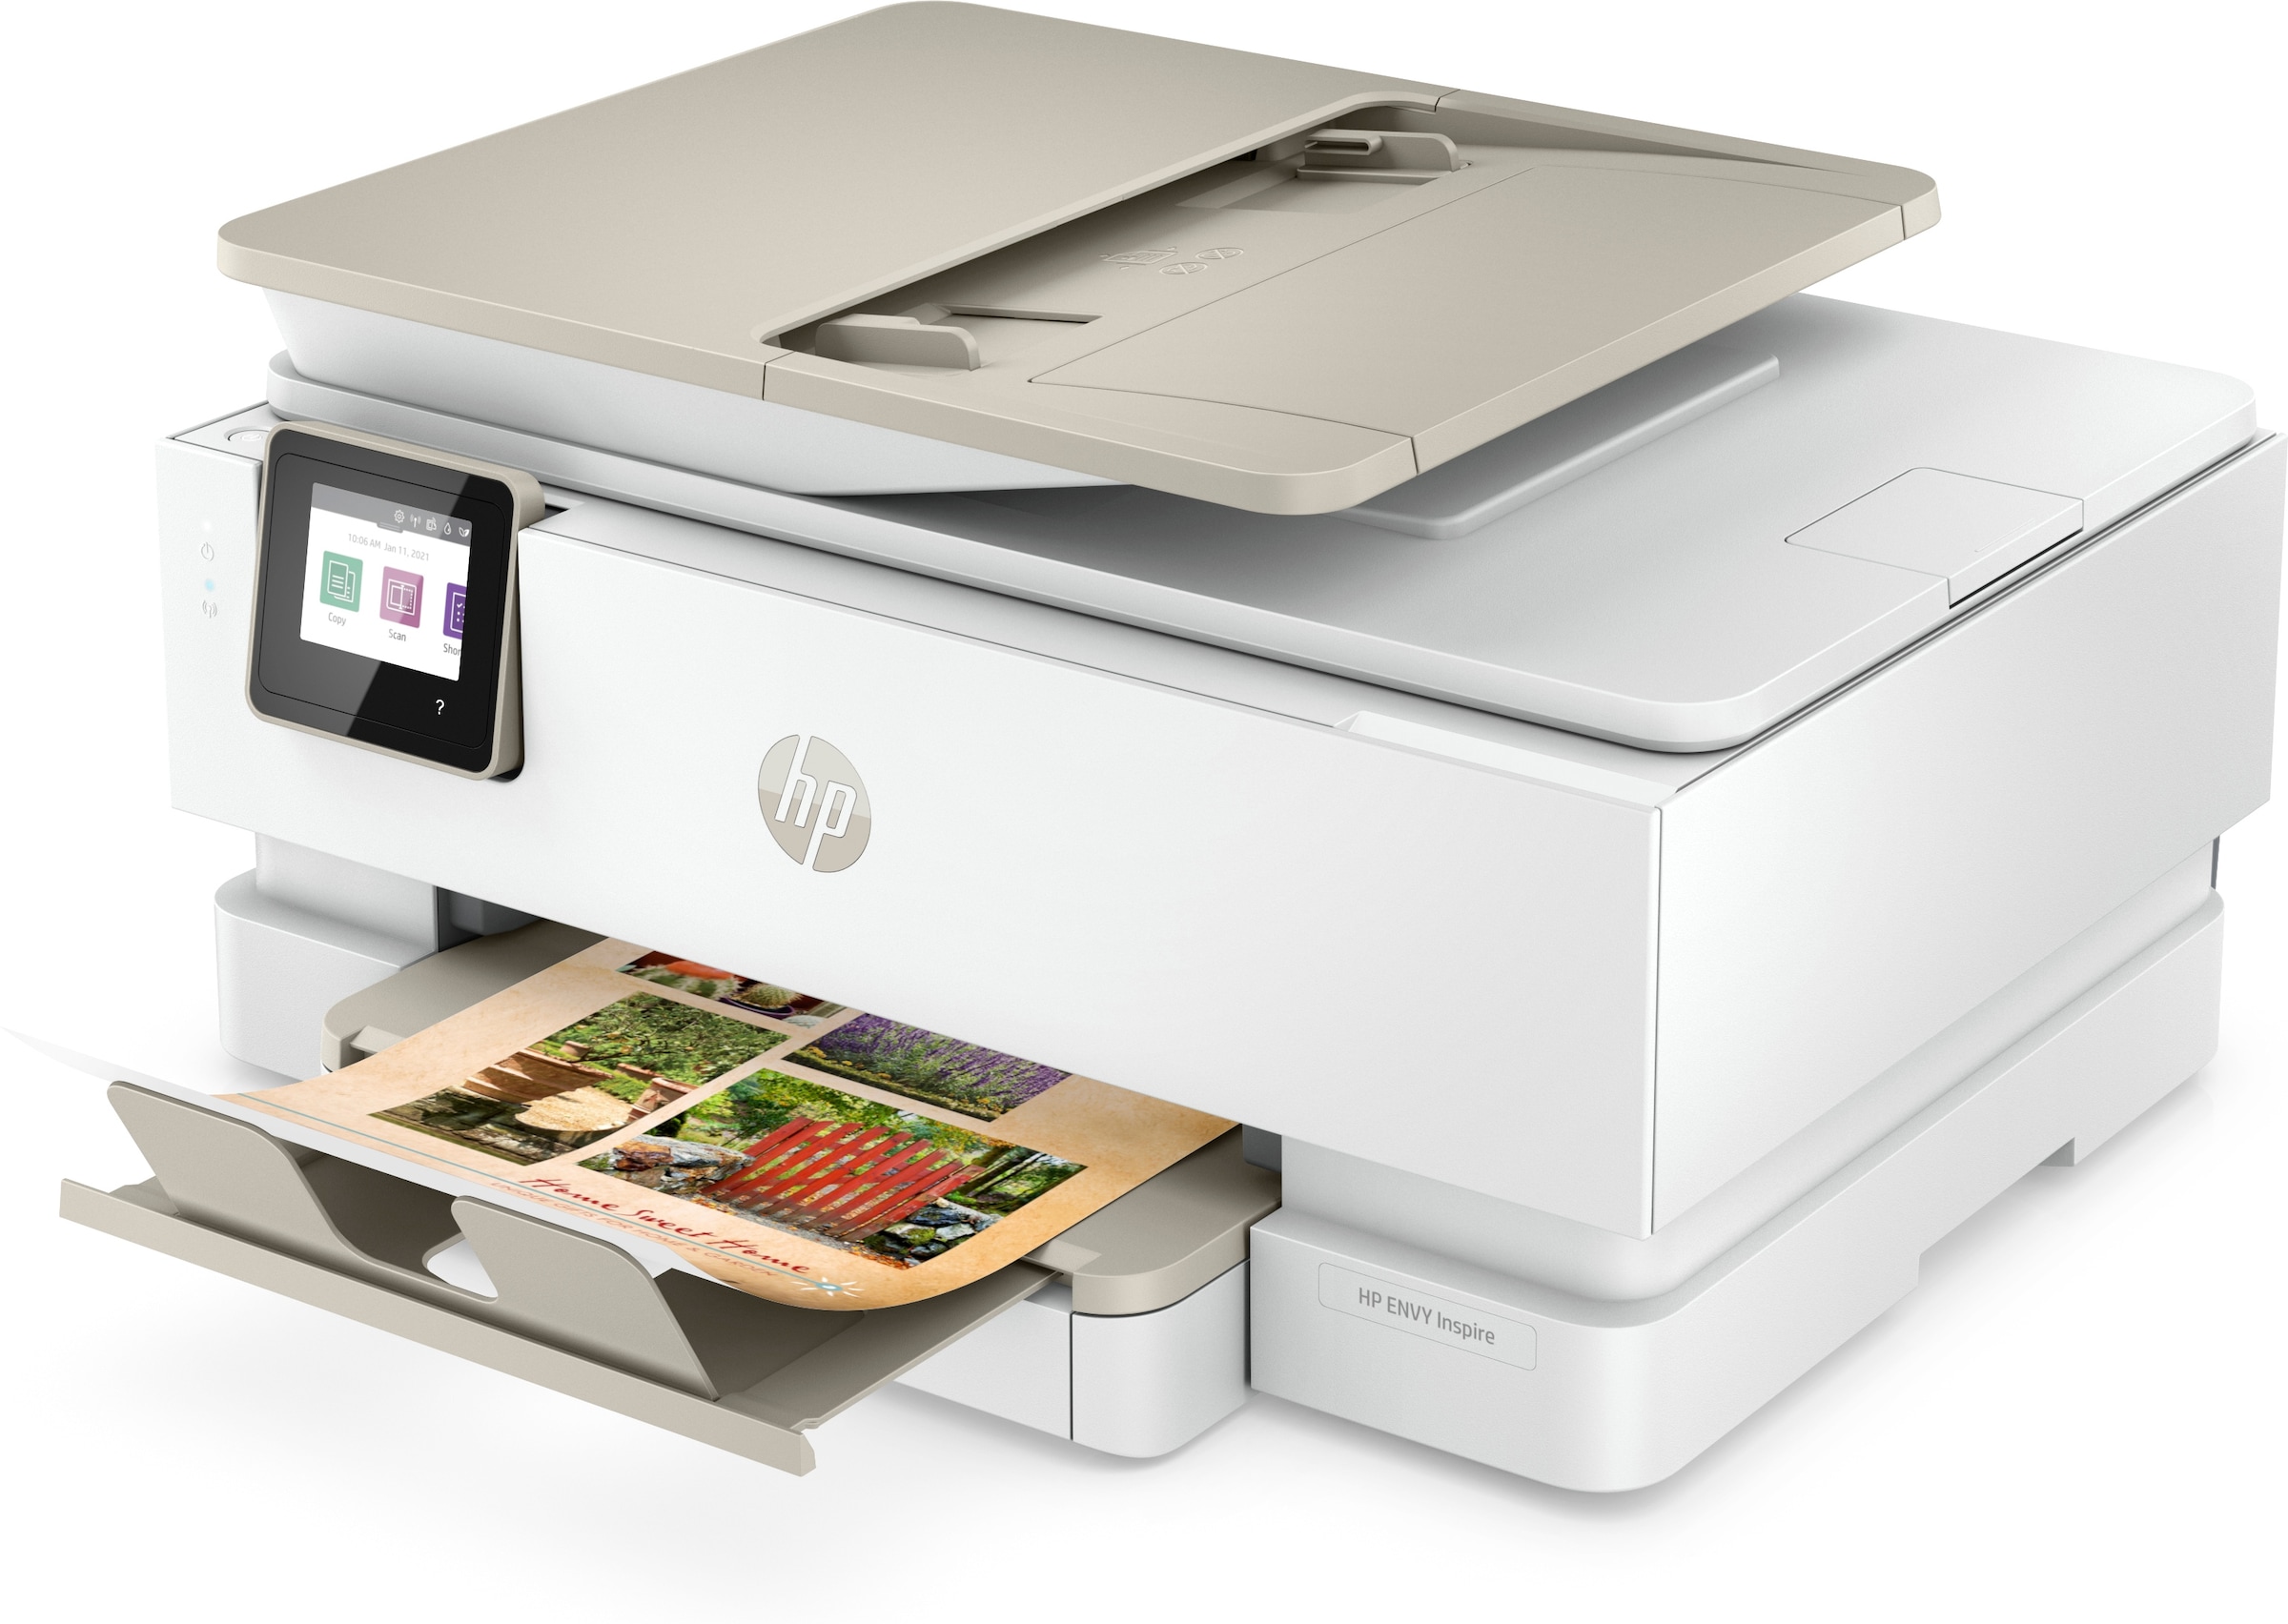 HP Multifunktionsdrucker »HP ENVY Inspire 7920e All-in-One-Drucker  bestellen bei OTTO